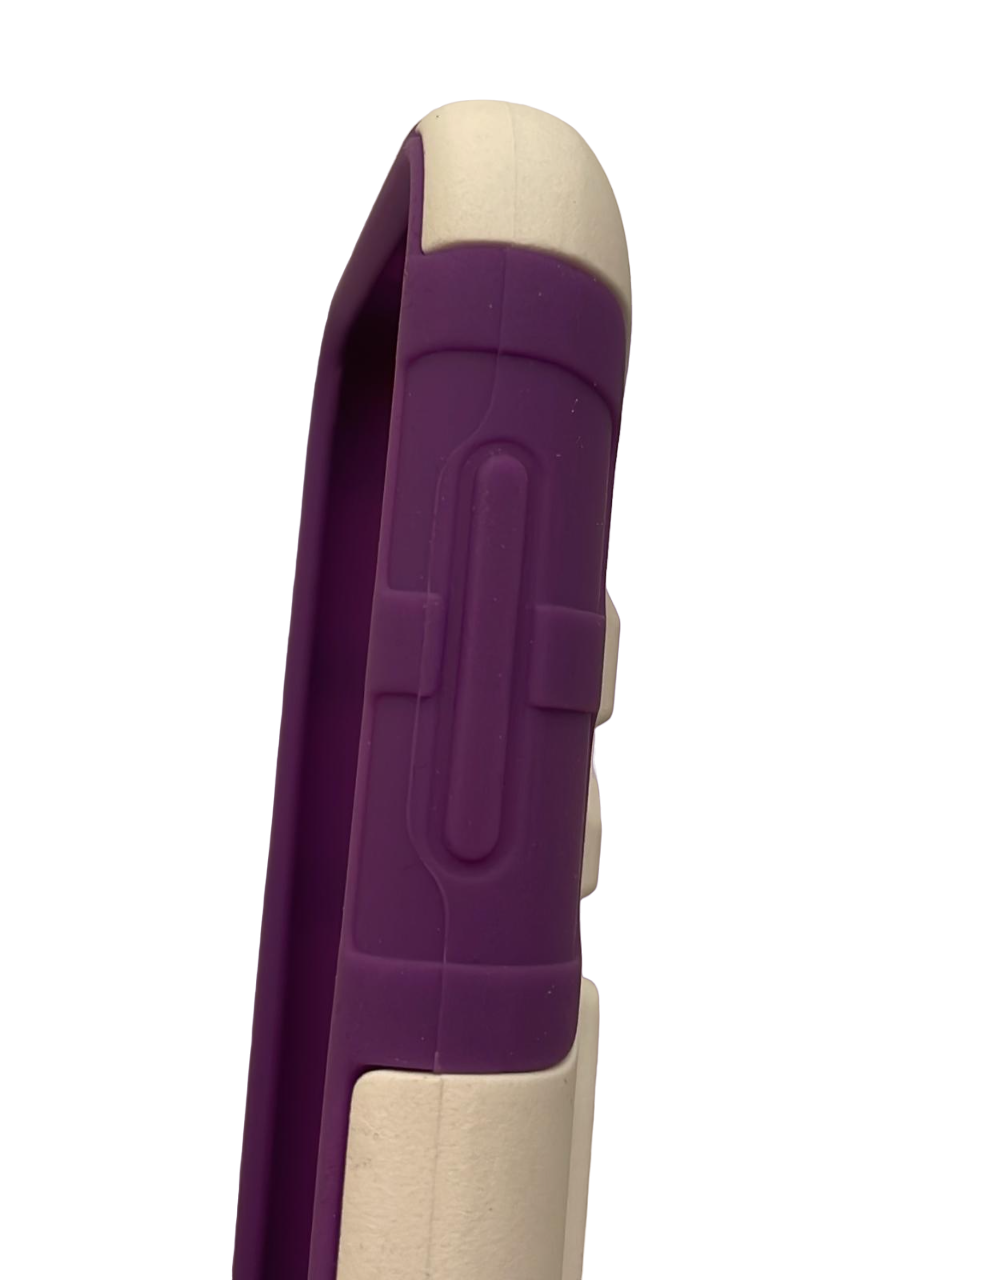 Sonne Holster Case with Kickstand for HTC Desire 510, White/Purple Sonne - фотография #8